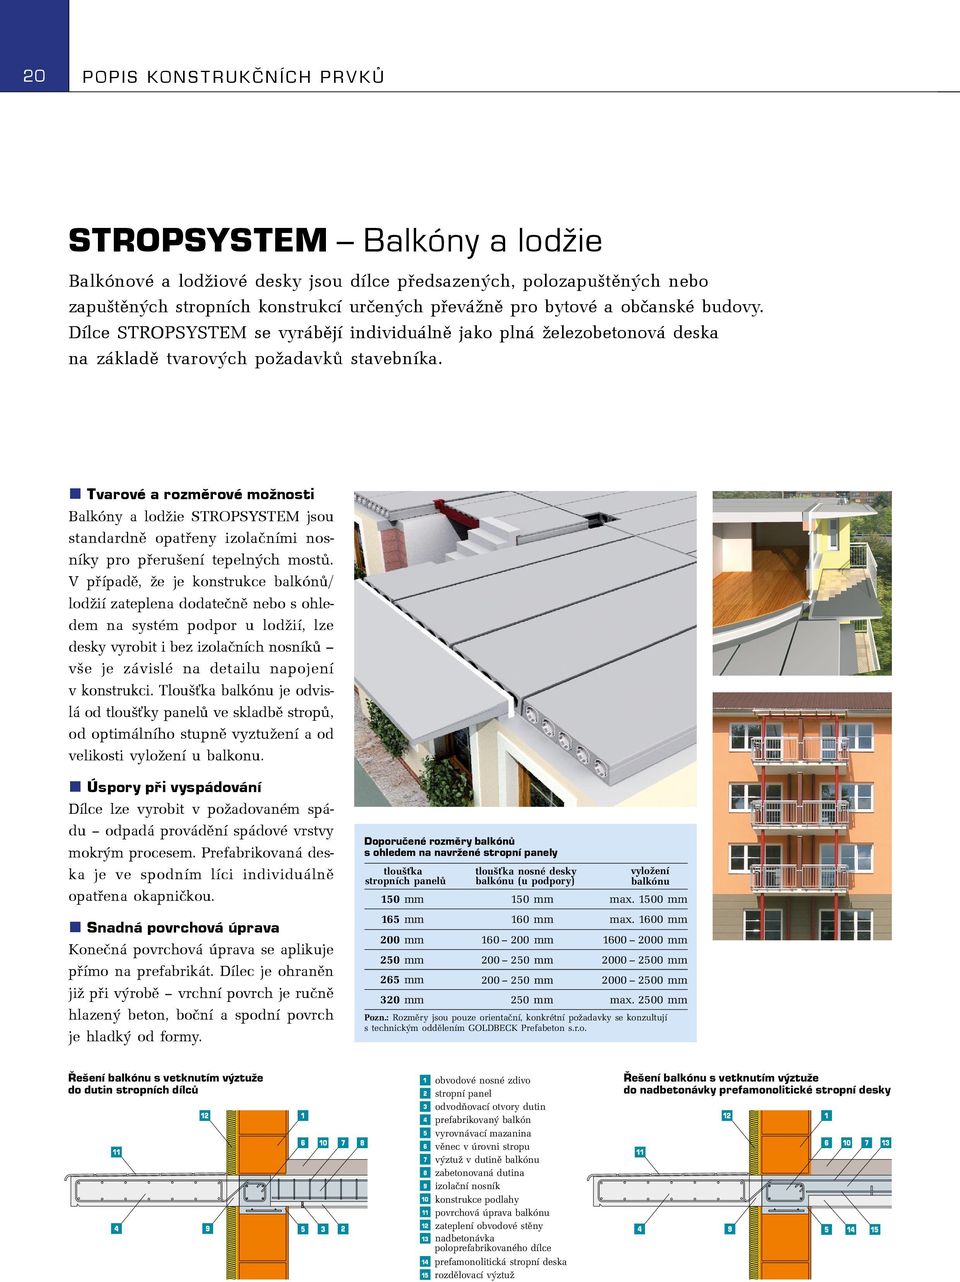 Tvarové a rozměrové možnosti Balkóny a lodžie STROPSYSTEM jsou standardně opatřeny izolačními nosníky pro přerušení tepelných mostů.